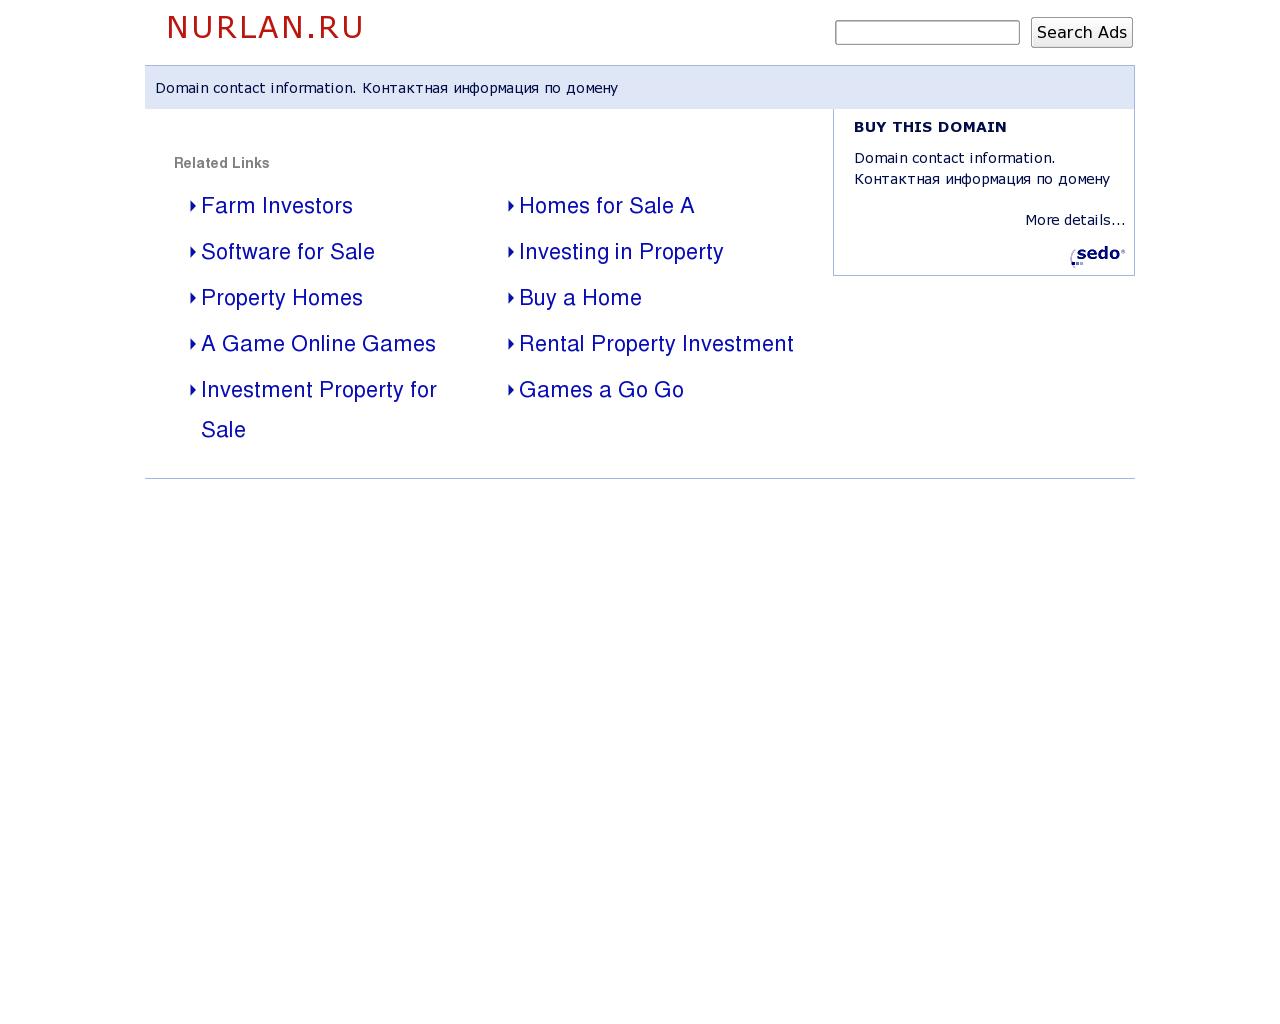 Изображение сайта nurlan.ru в разрешении 1280x1024